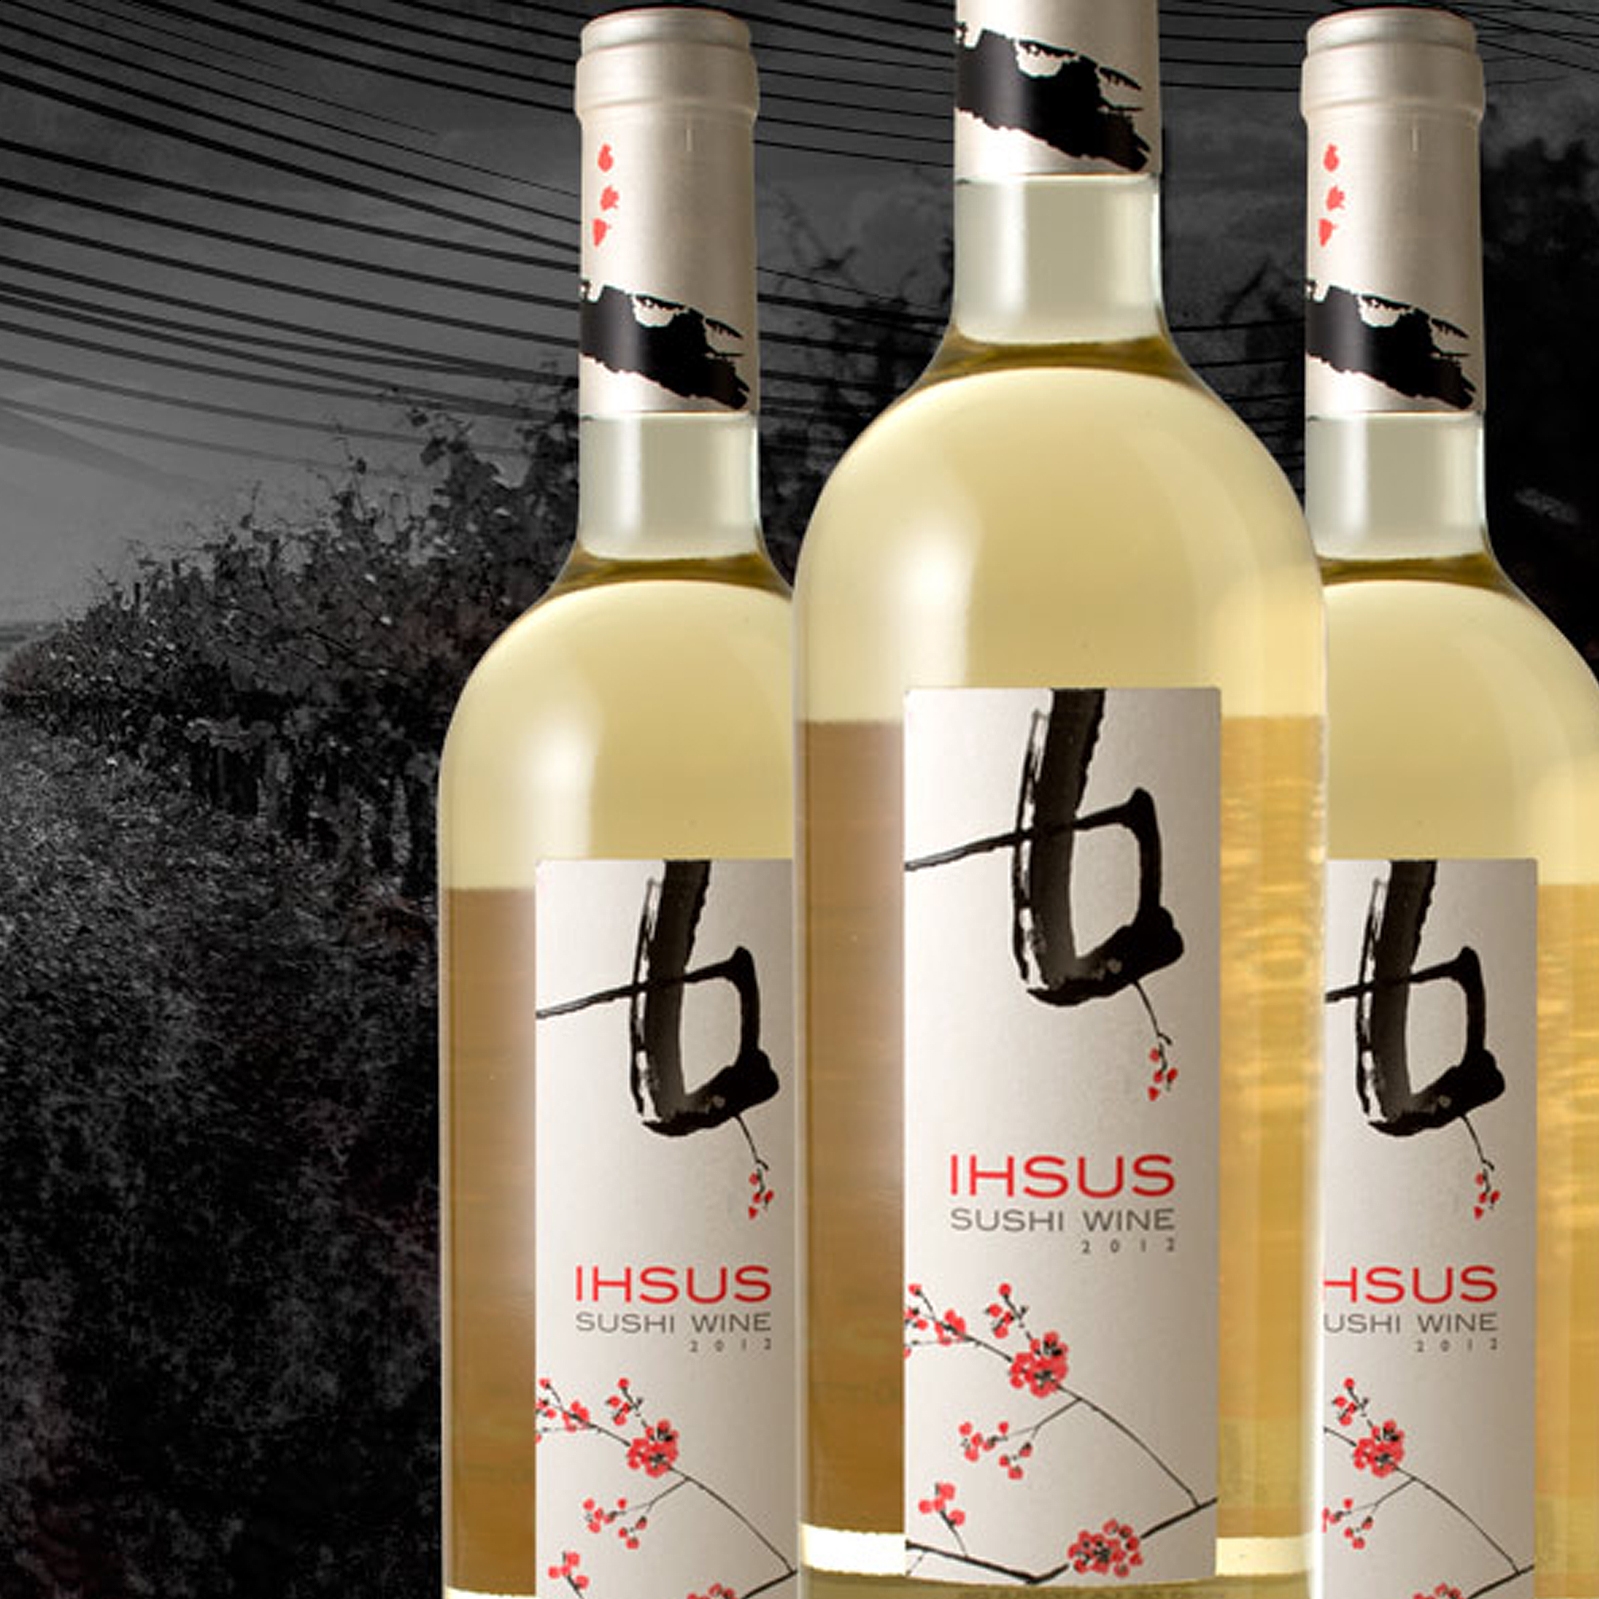 Ihsus - Vino blanco - IGP Vino de la Tierra de Castilla y León 75cl 6uds